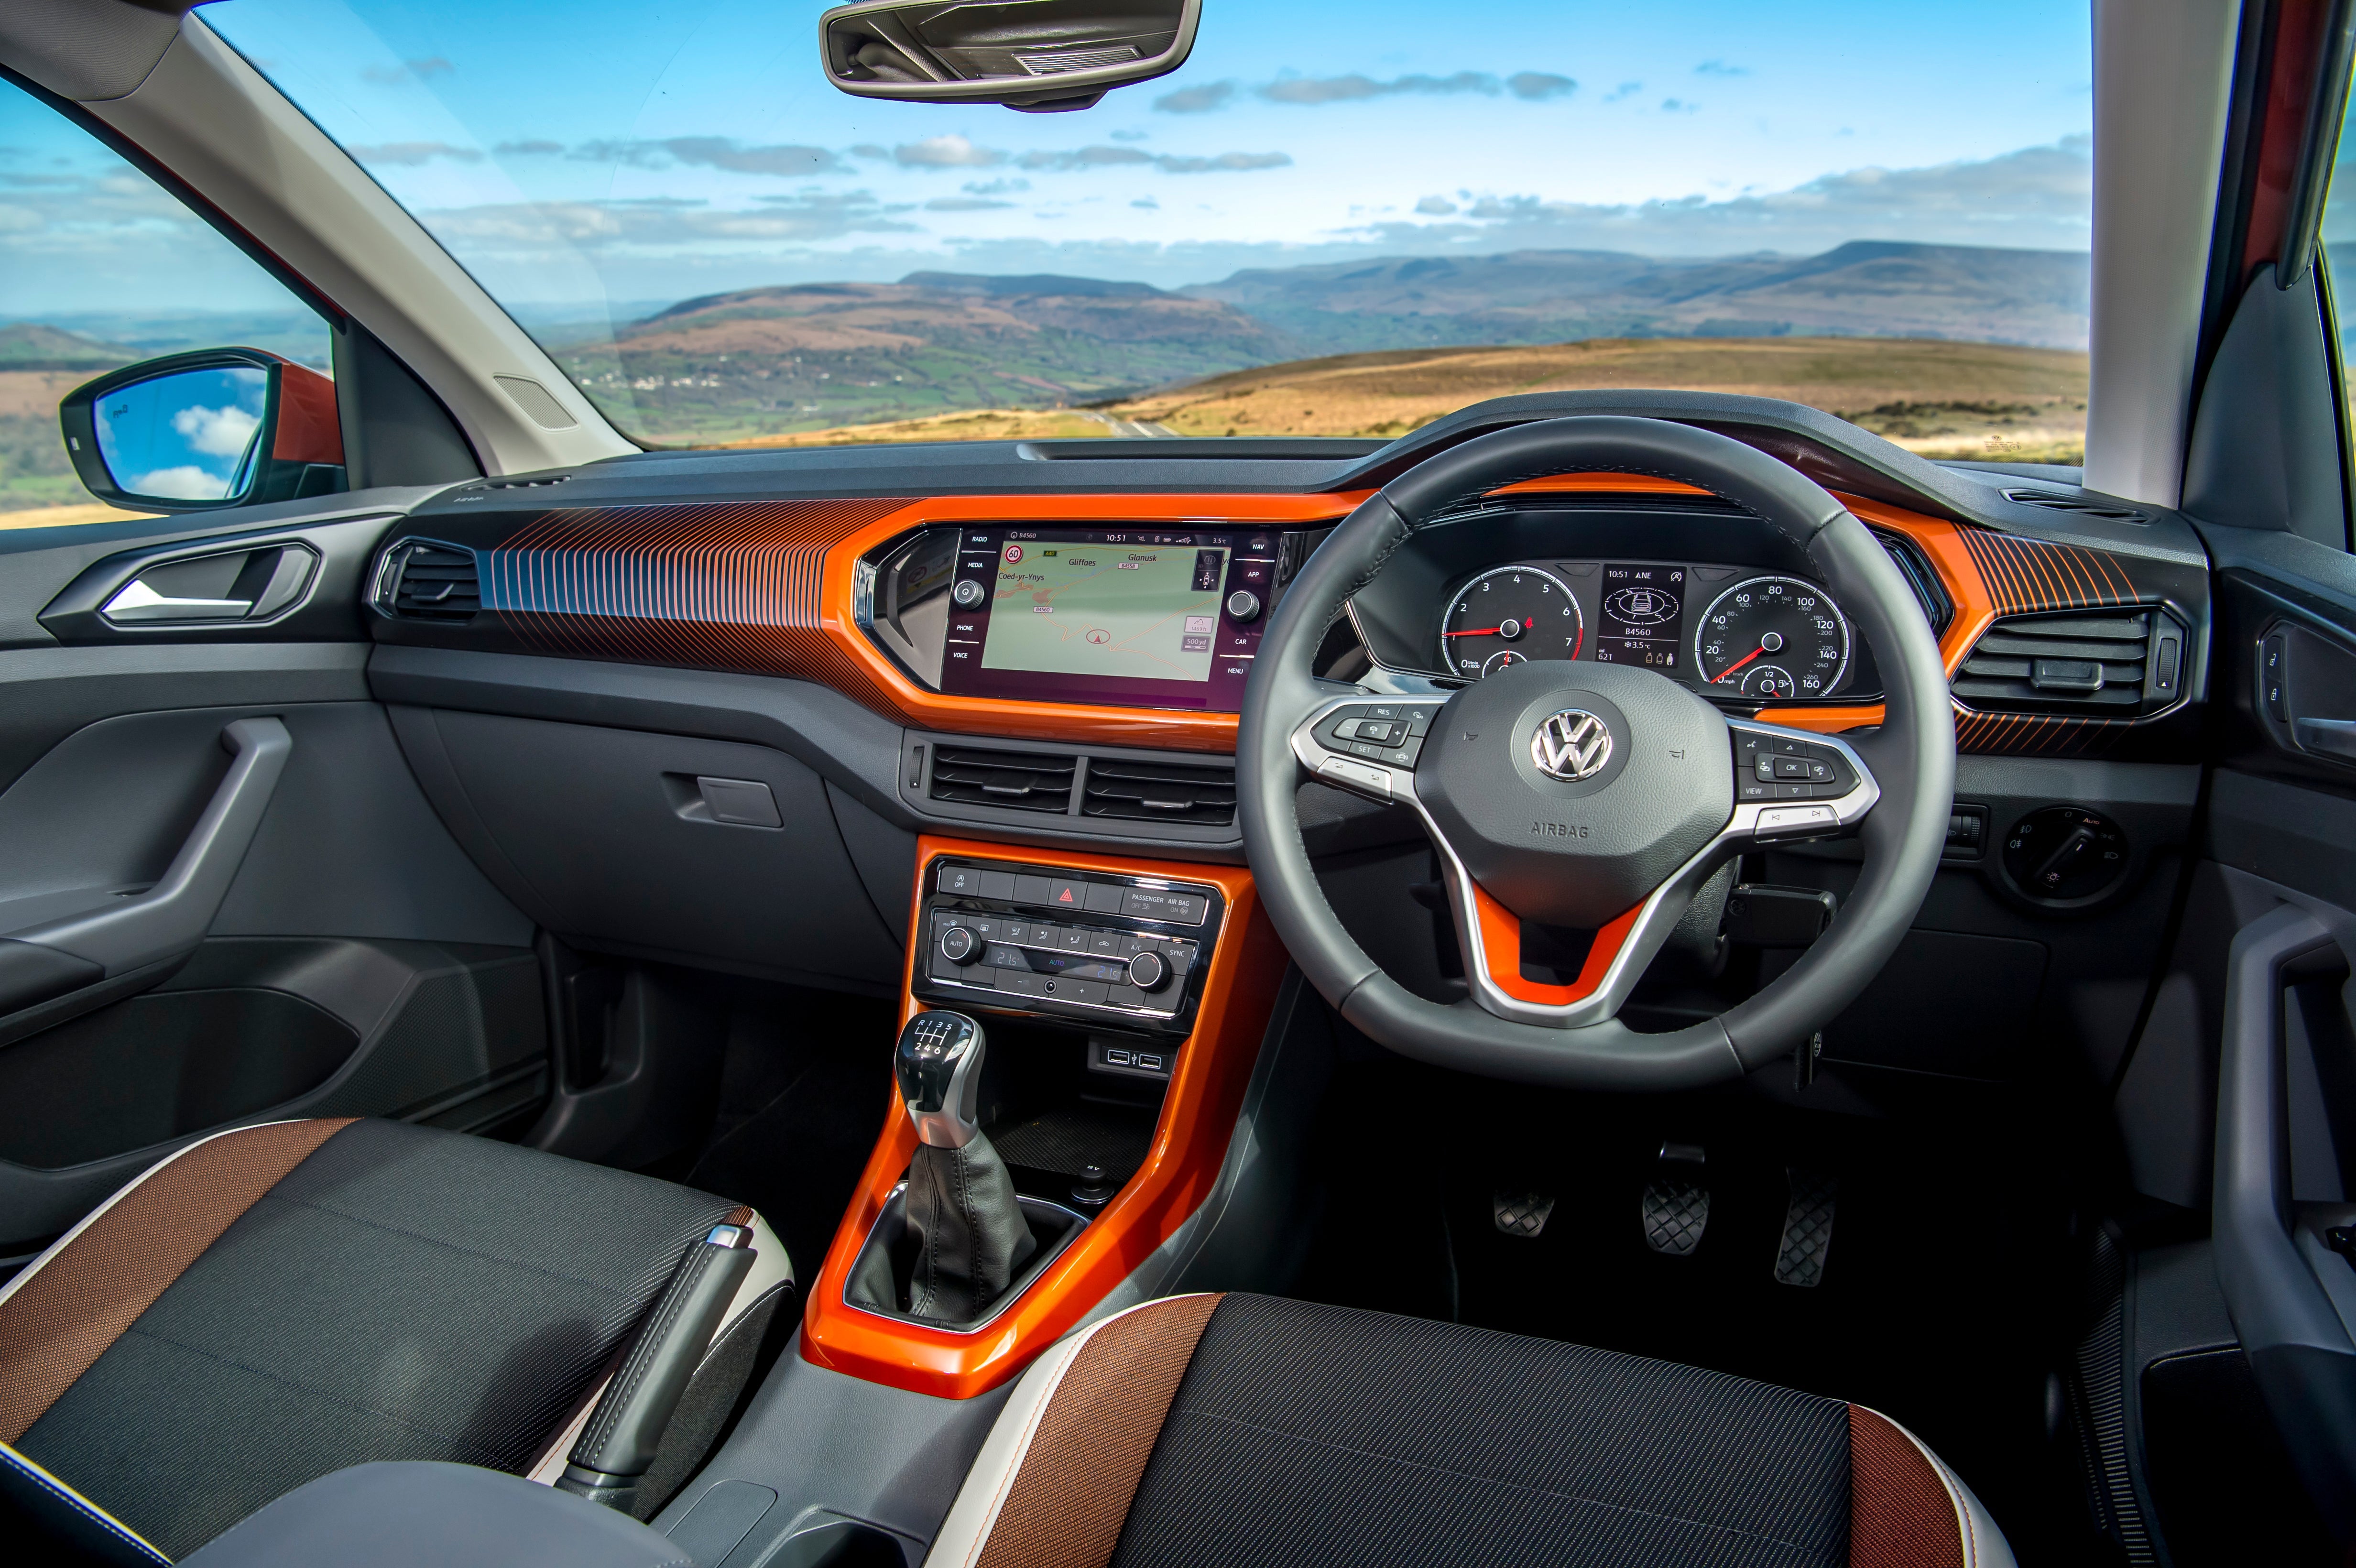 NEW Volkswagen T-Cross (2023) - Interior and Exterior Walkaround